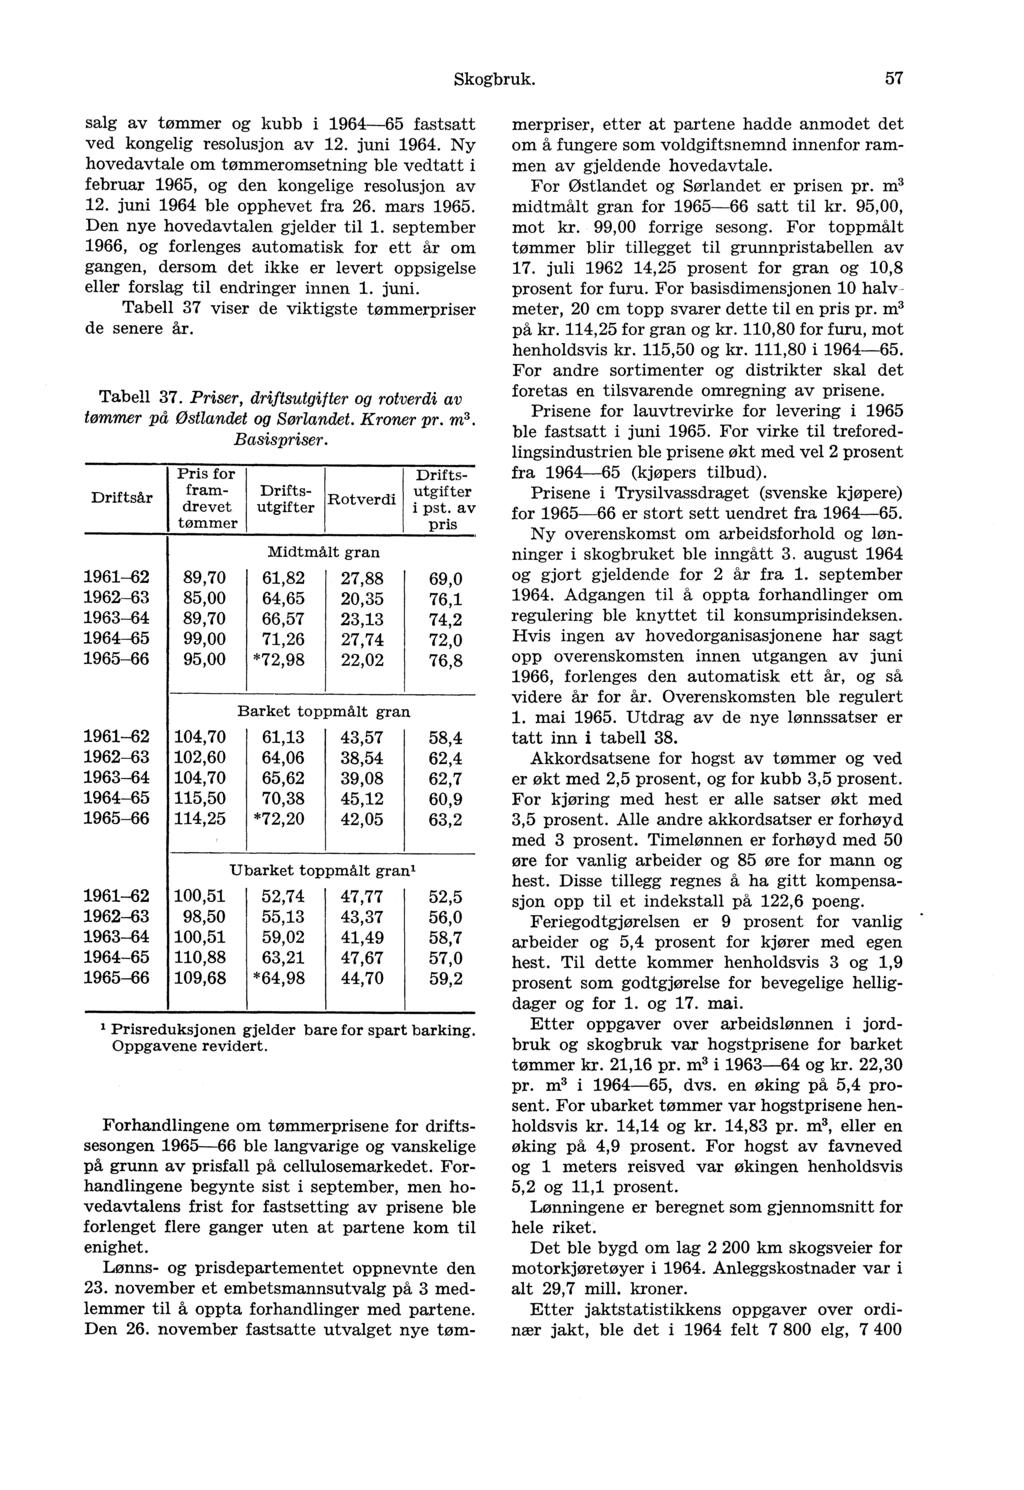 Skogbruk. 57 salg av tømmer og kubb i 1964-65 fastsatt ved kongelig resolusjon av 12. juni 1964. Ny hovedavtale om tømmeromsetning ble vedtatt i februar 1965, og den kongelige resolusjon av 12.